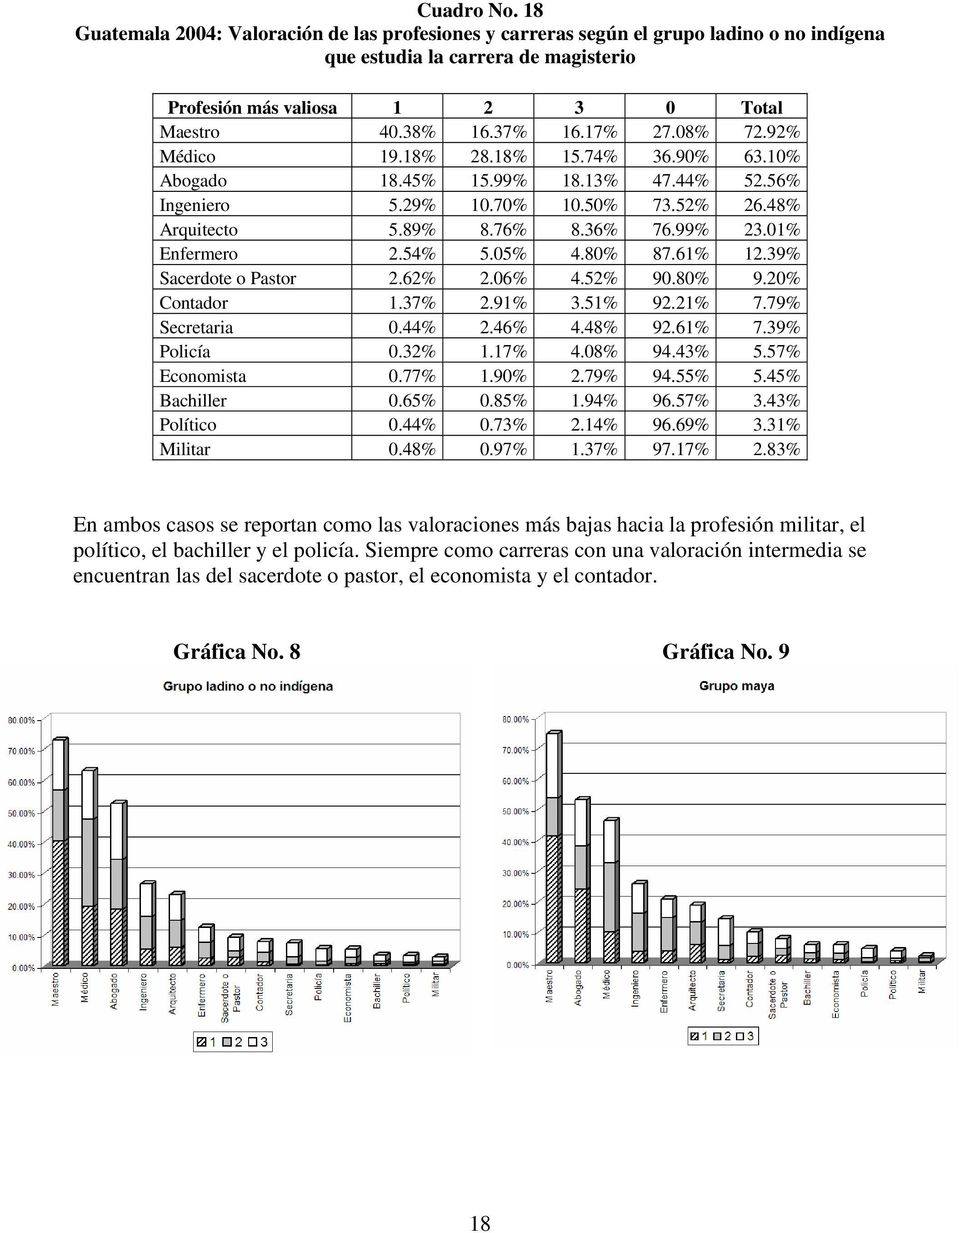 01% Enfermero 2.54% 5.05% 4.80% 87.61% 12.39% Sacerdote o Pastor 2.62% 2.06% 4.52% 90.80% 9.20% Contador 1.37% 2.91% 3.51% 92.21% 7.79% Secretaria 0.44% 2.46% 4.48% 92.61% 7.39% Policía 0.32% 1.17% 4.